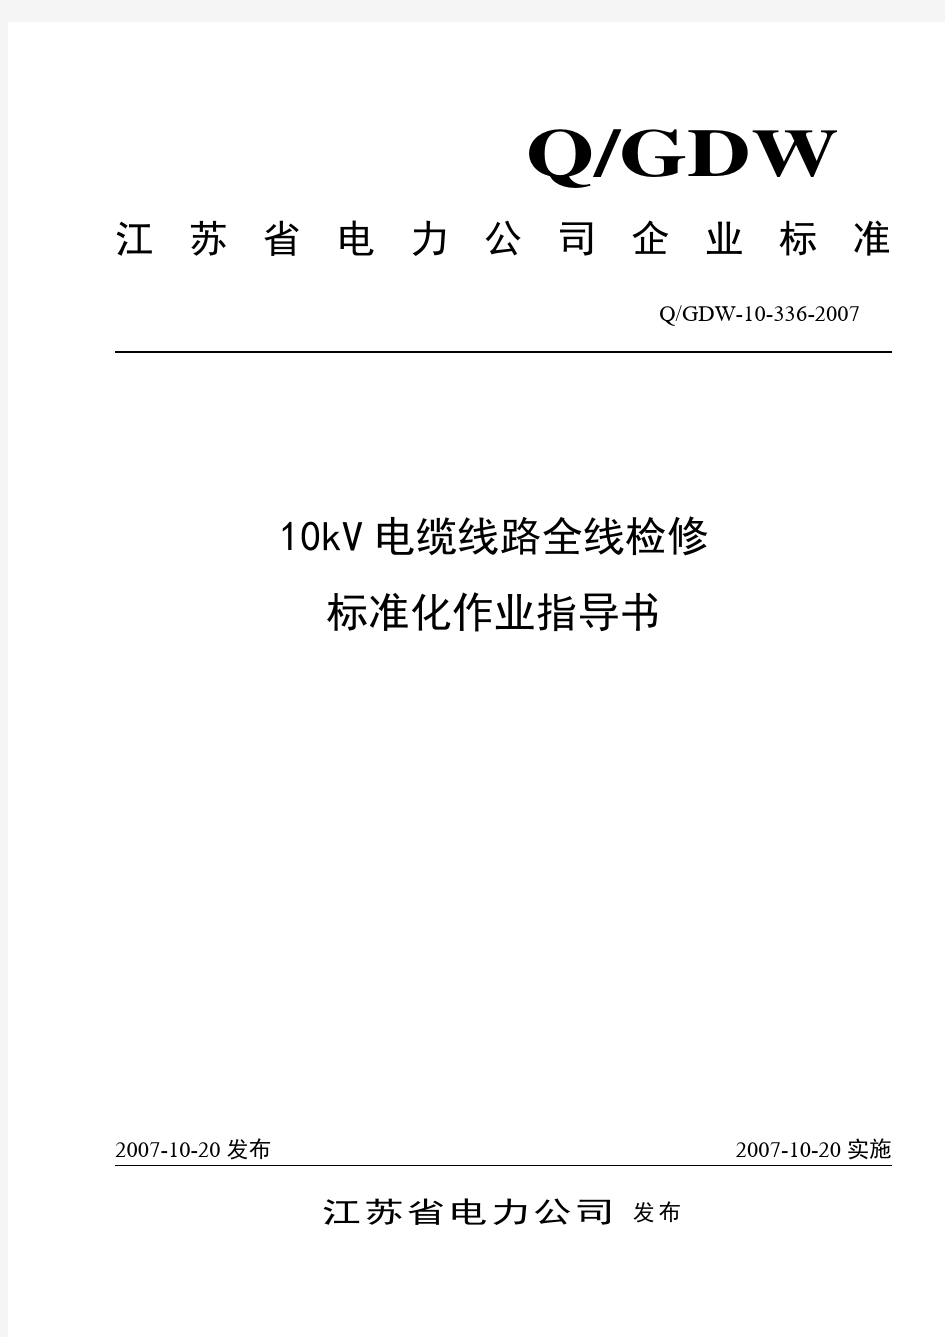 10kV电缆线路全线检修标准化作业指导书